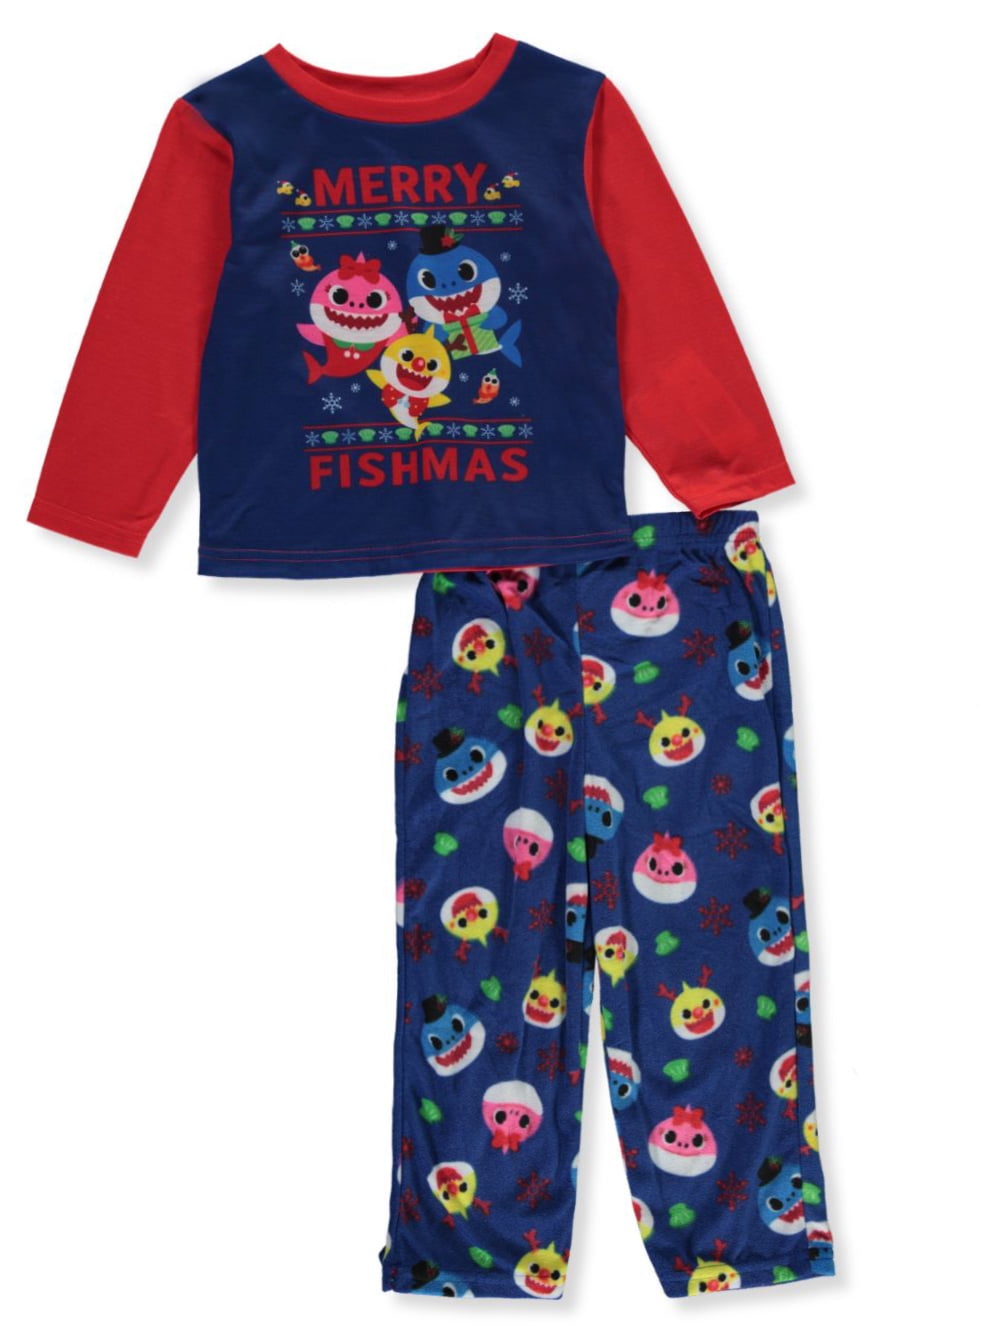 Baby Shark Boys 2-Piece Pajama Set